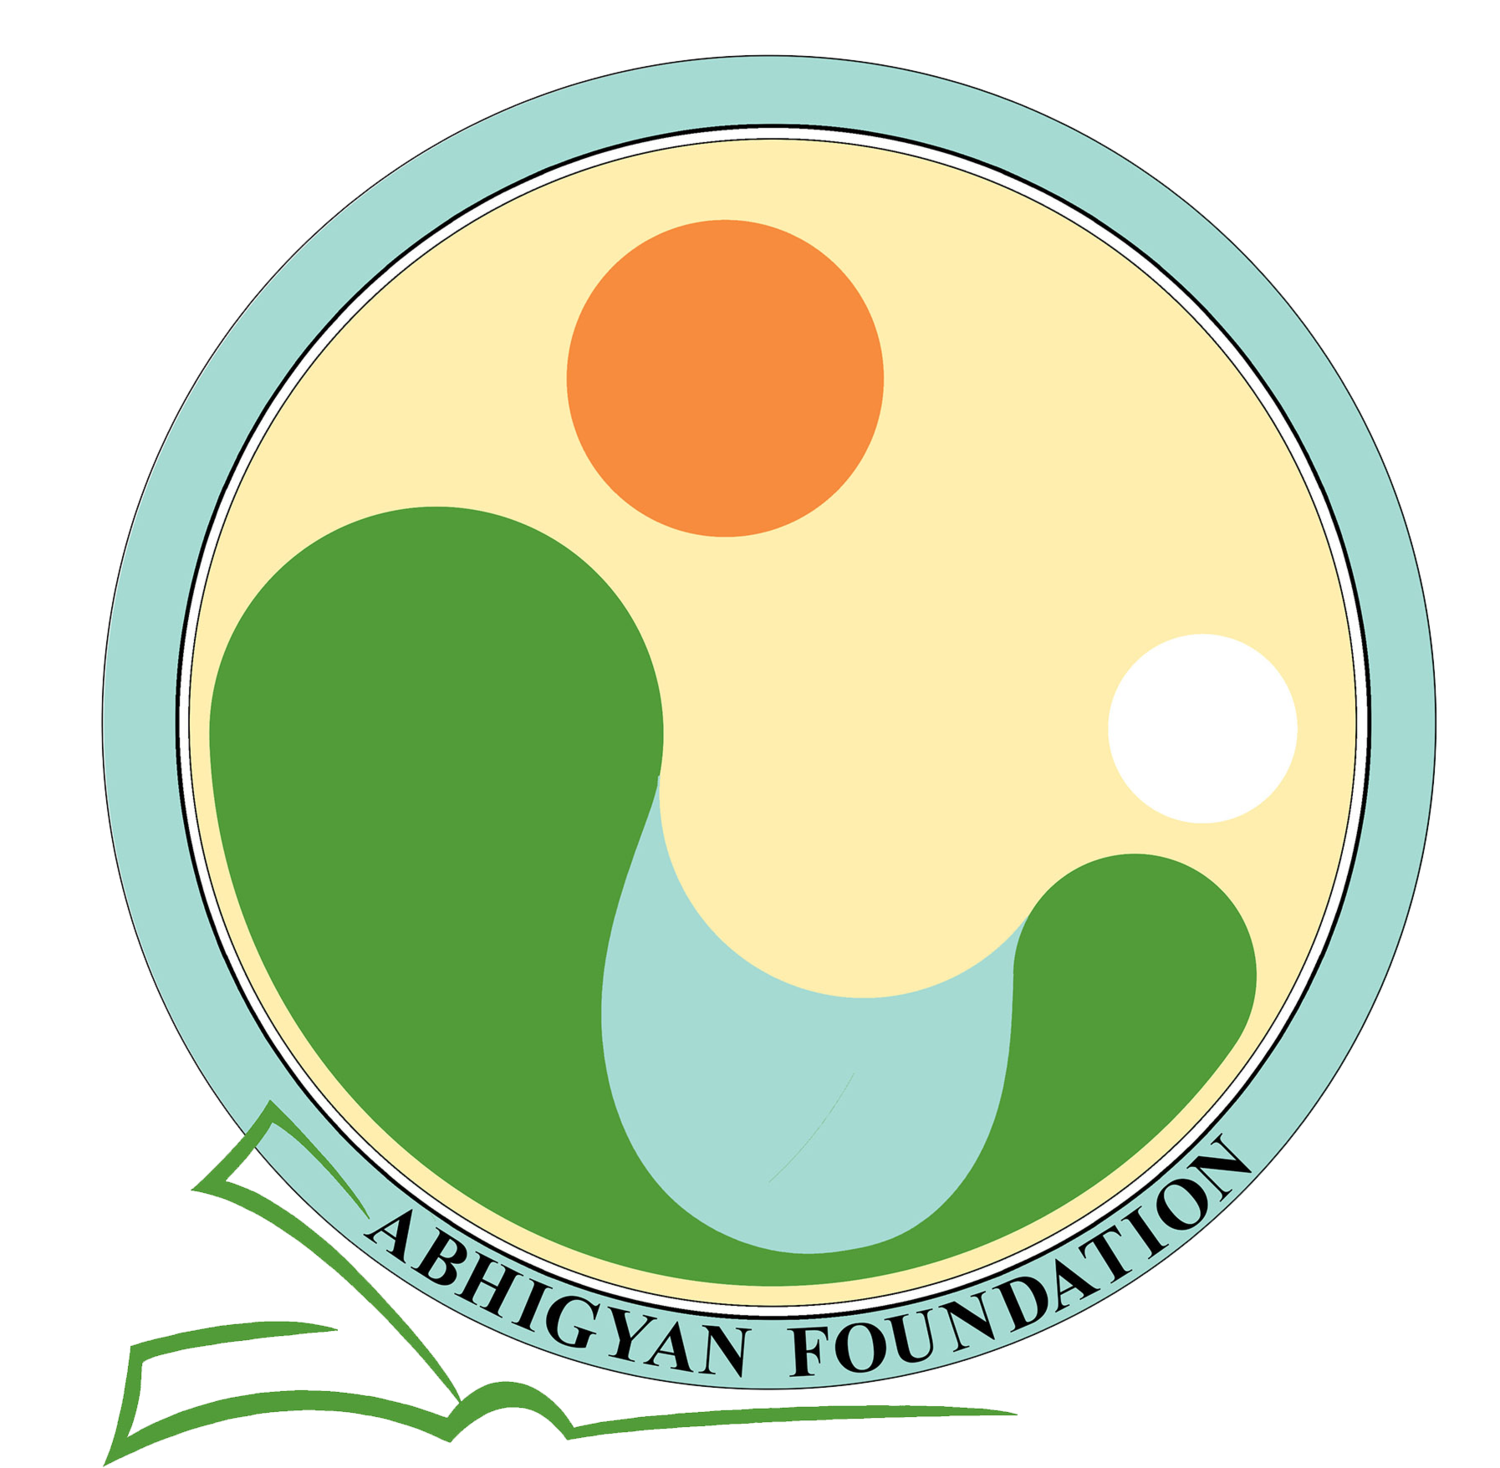 Abhigyan Foundation